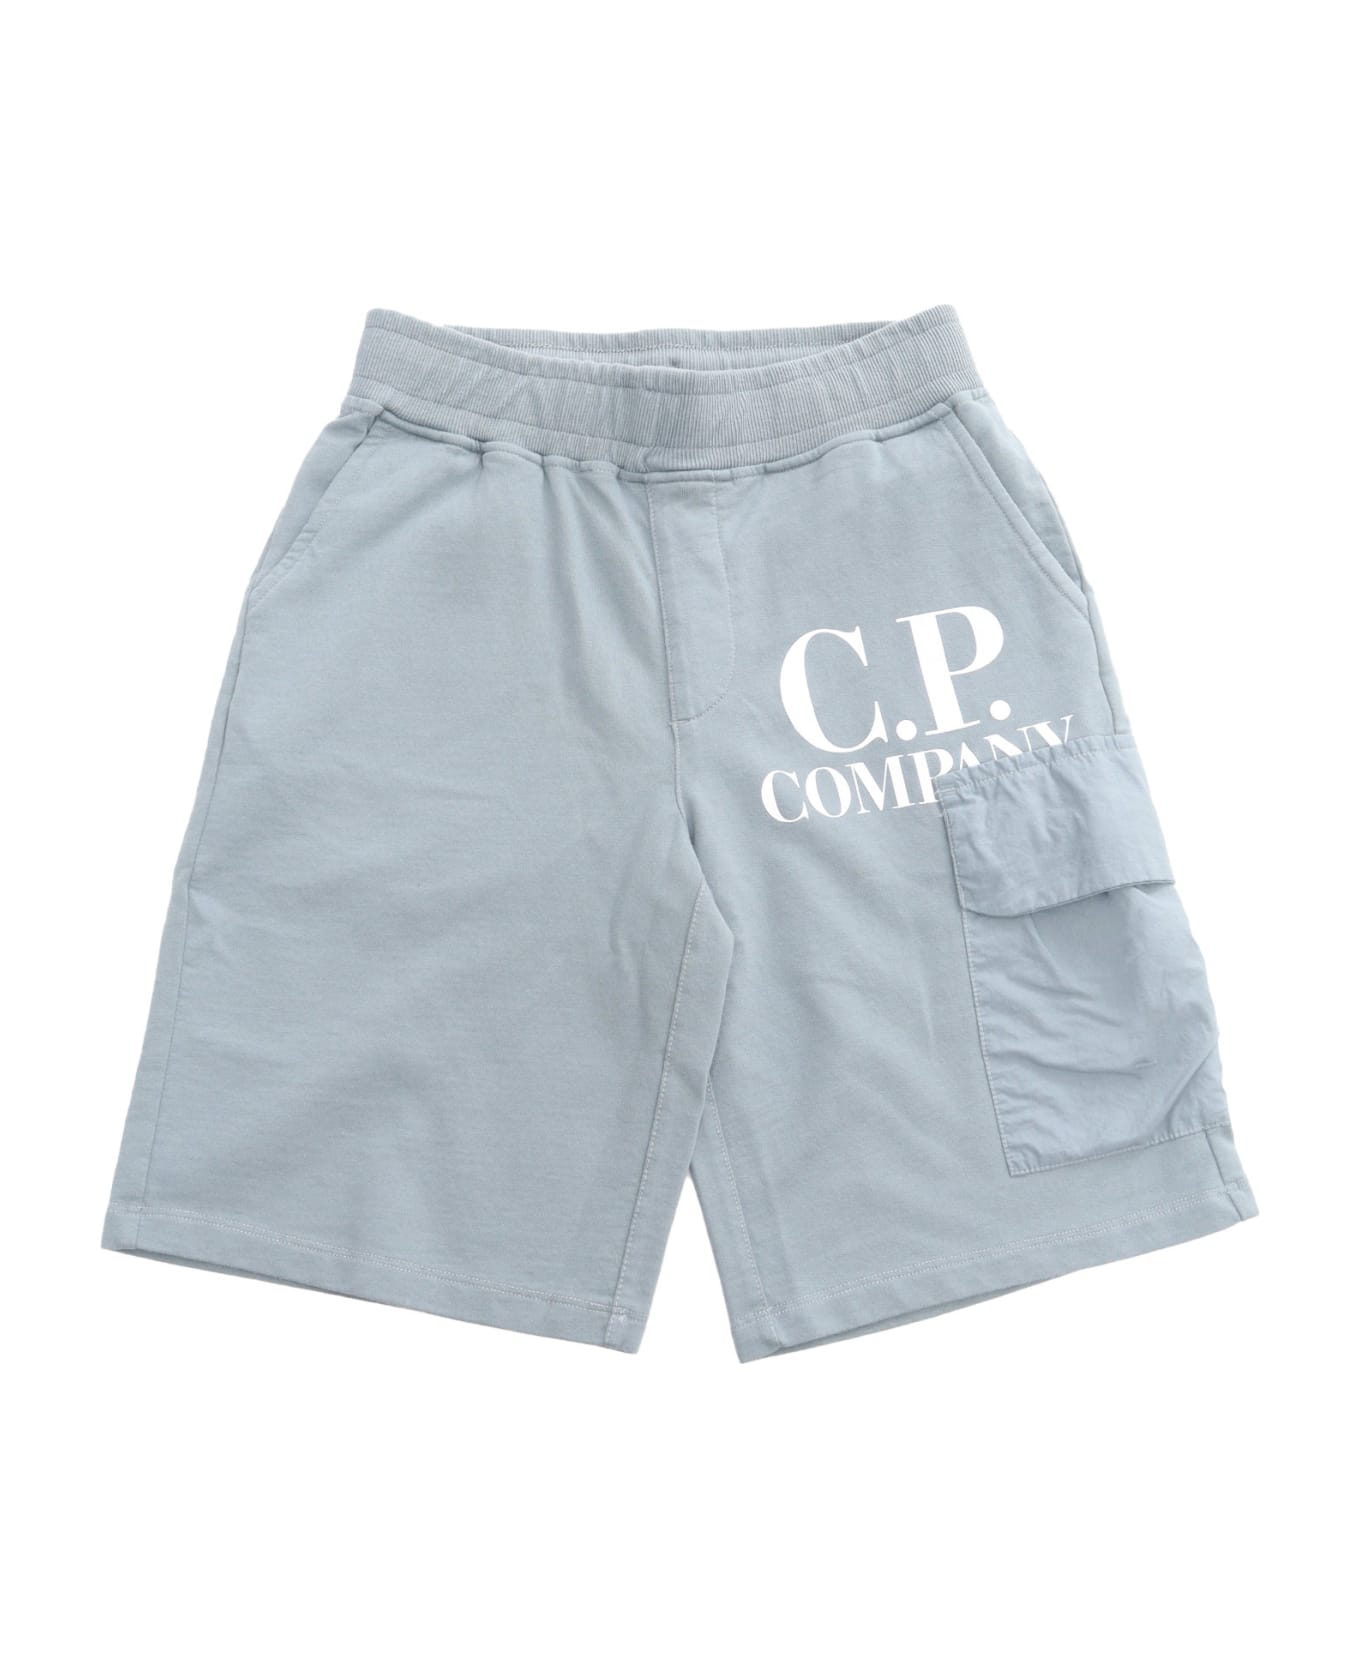 C.P. Company Undersixteen Gray Shorts - GREY